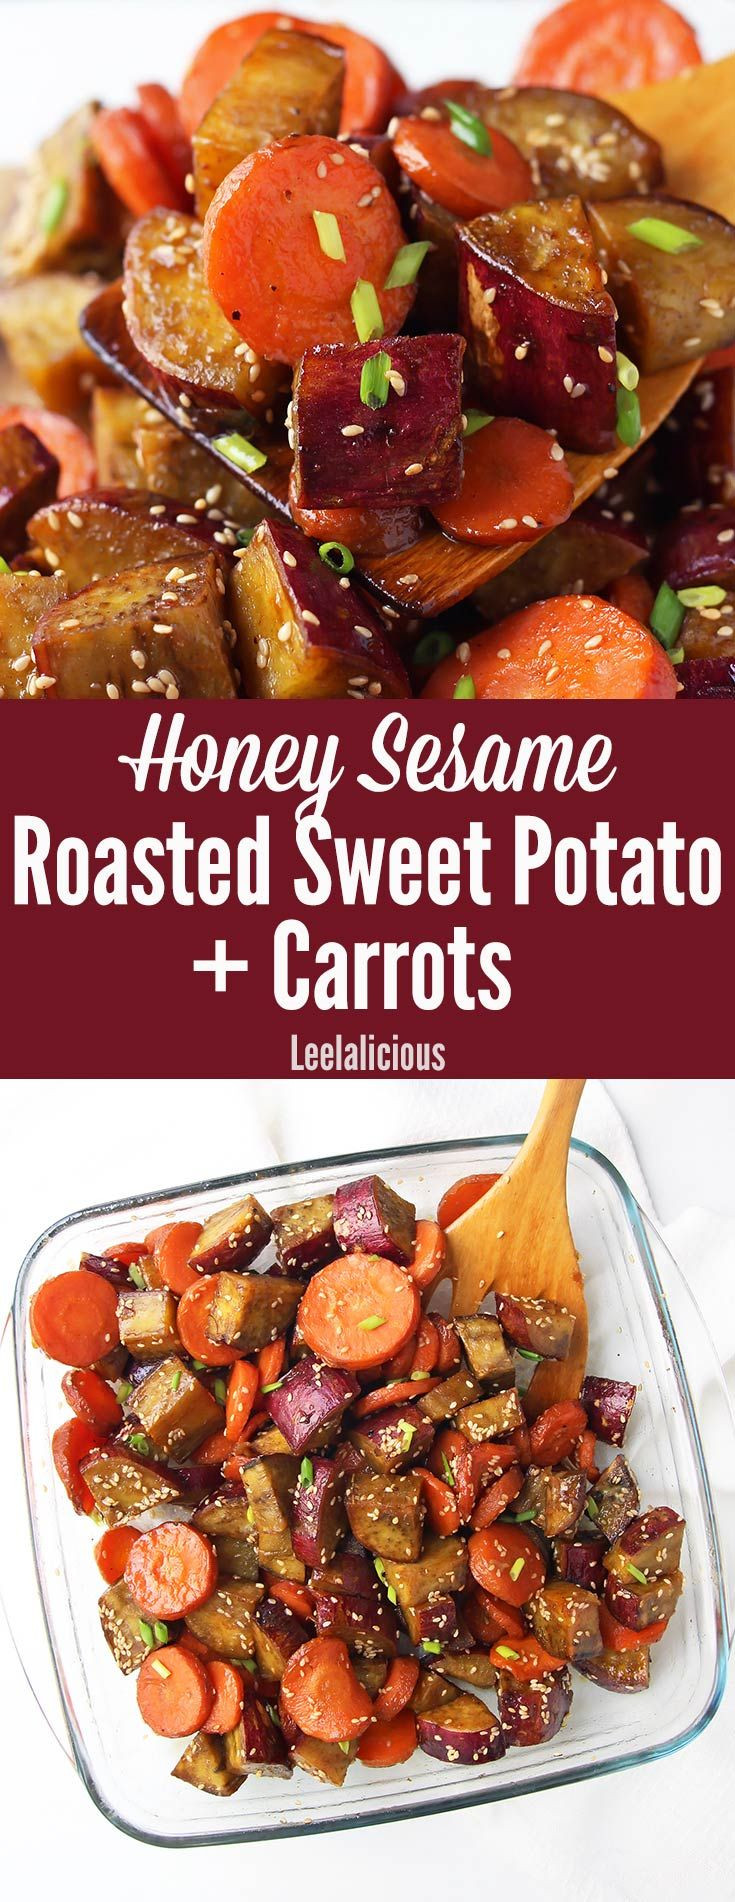 Healthy Carrot Recipes
 Honey Sesame Roasted Sweet Potato and Carrots